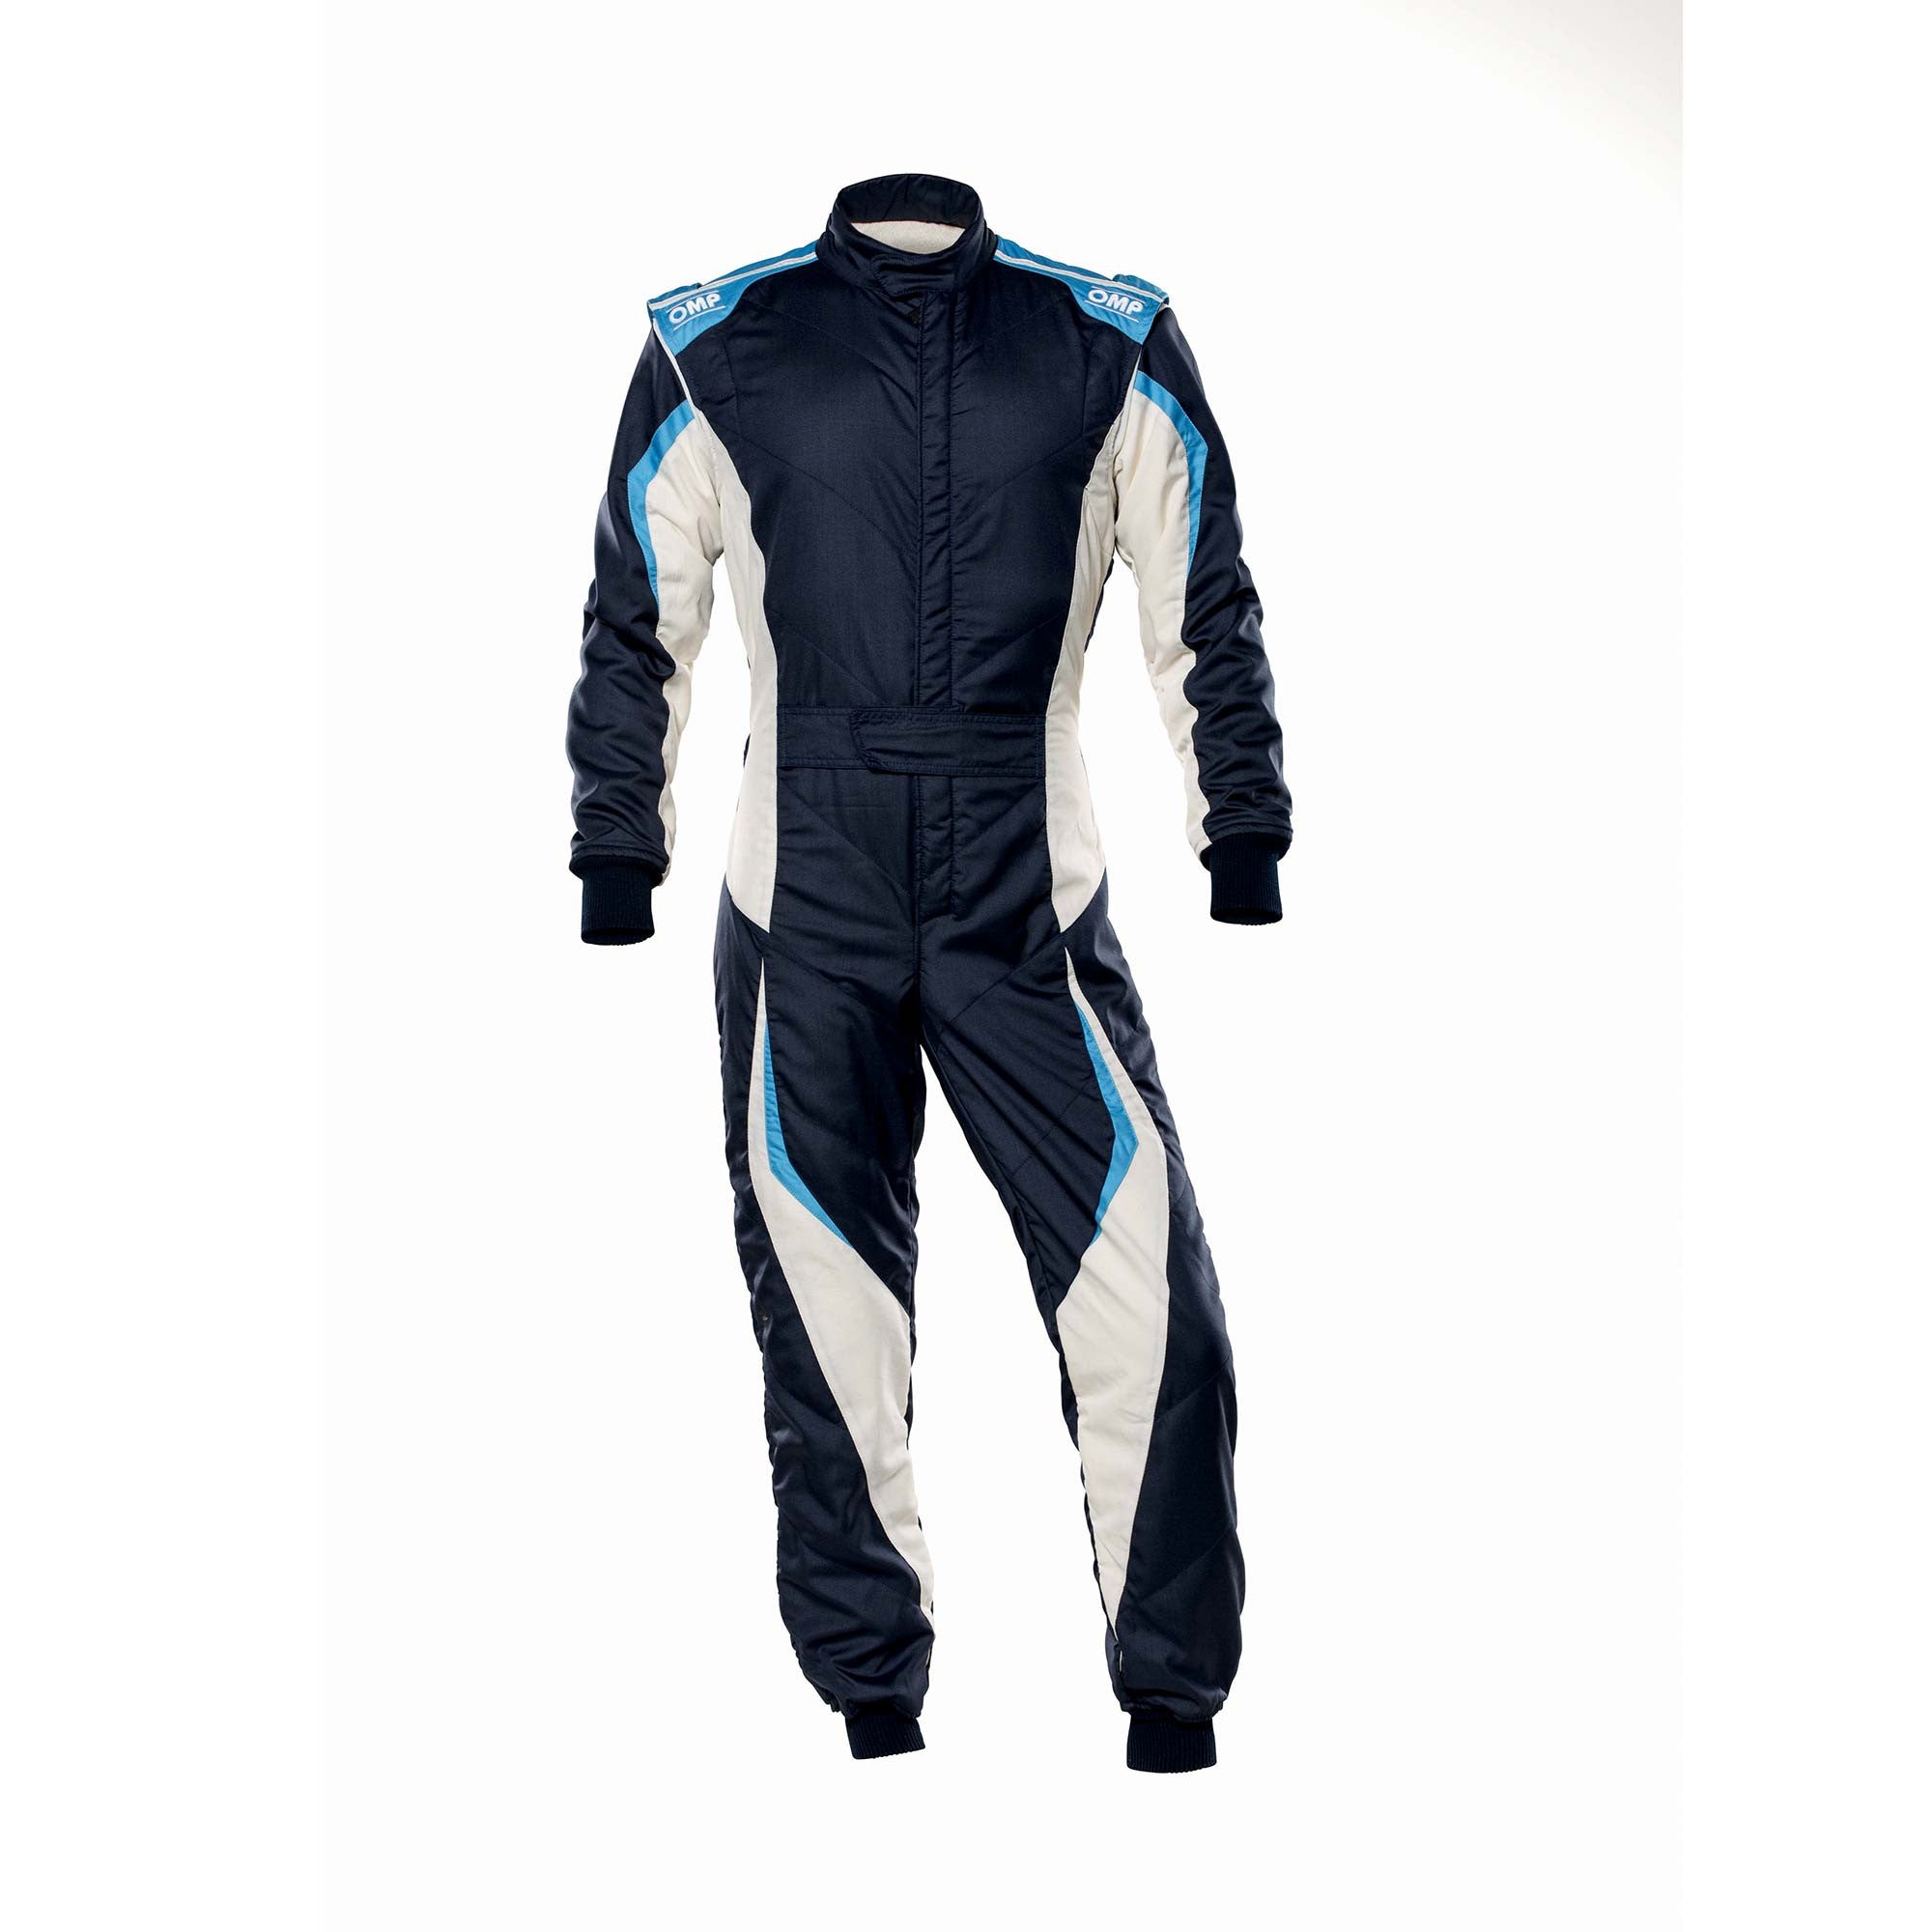 OMP IA0-1859-B01-246-46 Racing suit TECNICA EVO MY2021, FIA 8856-2018, navy blue/white/grey/cyan, size 46 Photo-0 